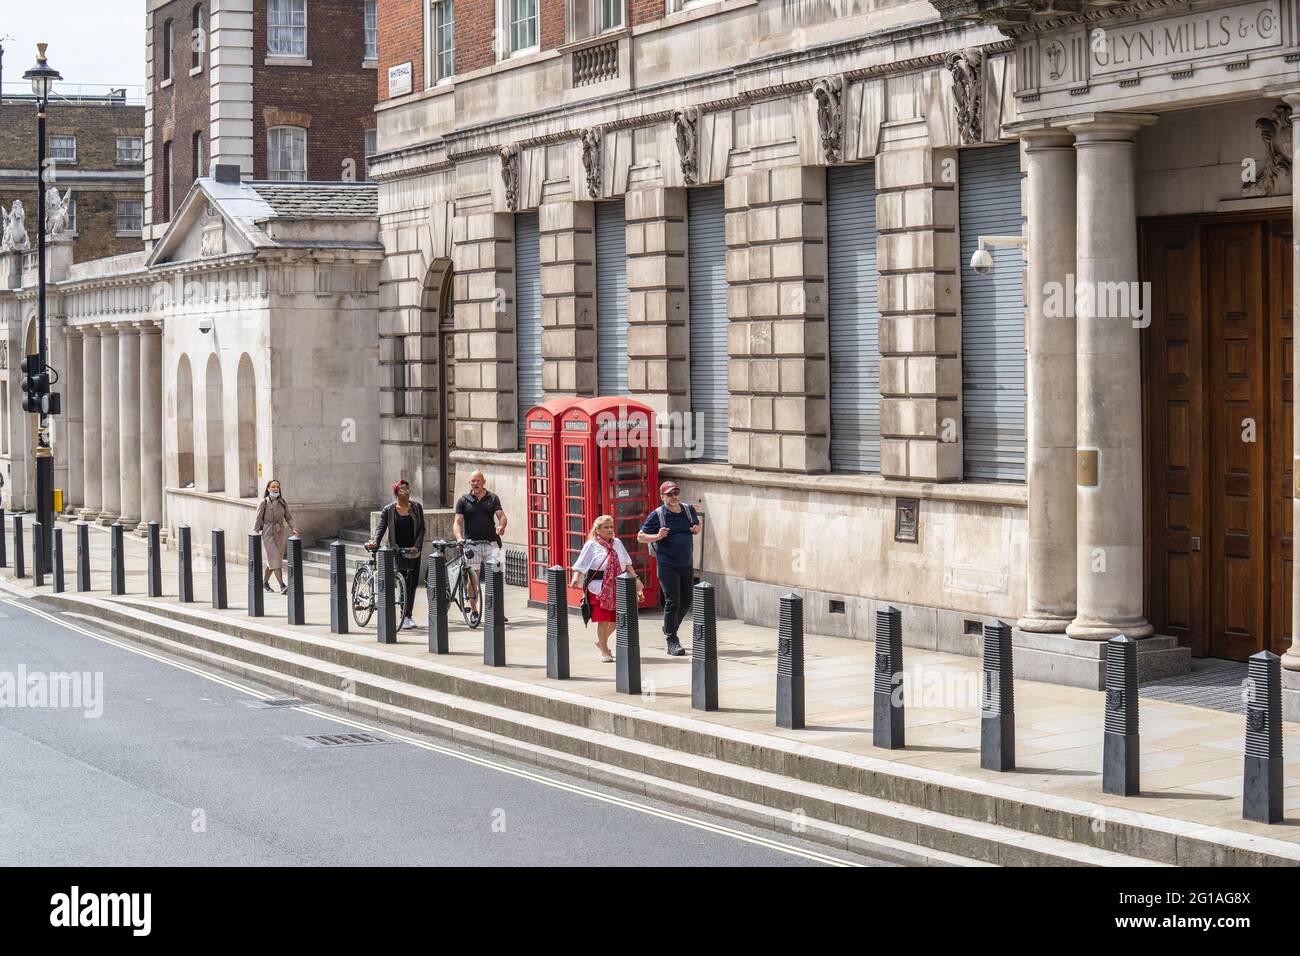 Telefono rosso, un chiosco telefonico per un telefono pubblico. Regno Unito, Londra, 29 maggio 2021 Foto Stock